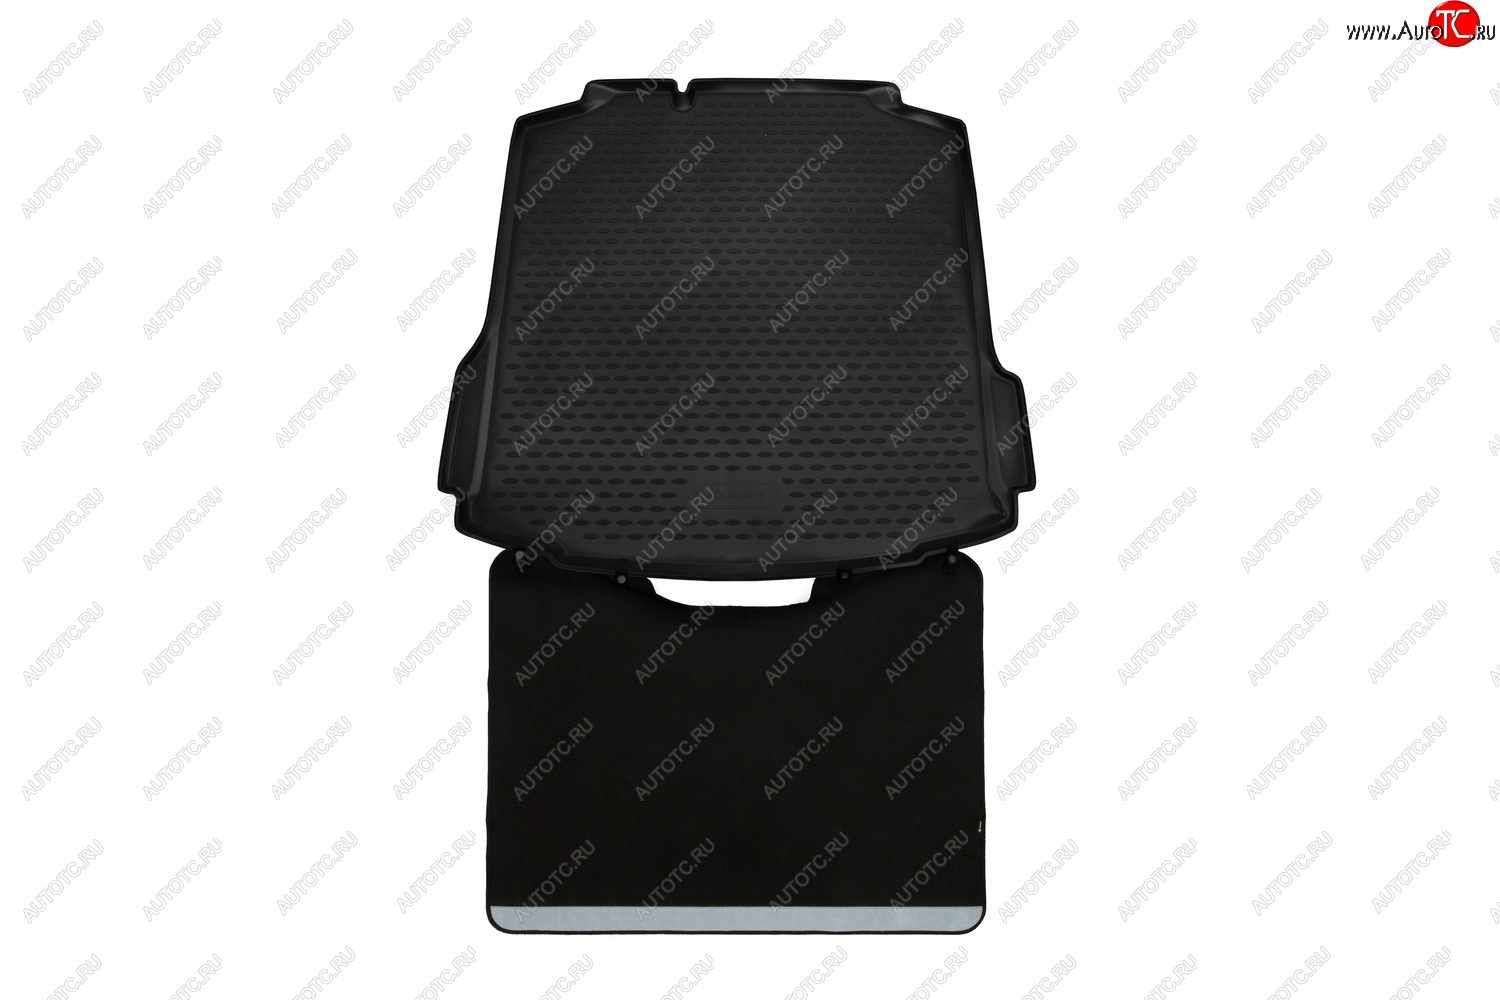 4 679 р. Коврик в багажник (с функцией защиты бампера, полиуретан, чёрный) Element Skoda Rapid NH3 рестайлинг лифтбэк (2017-2020)